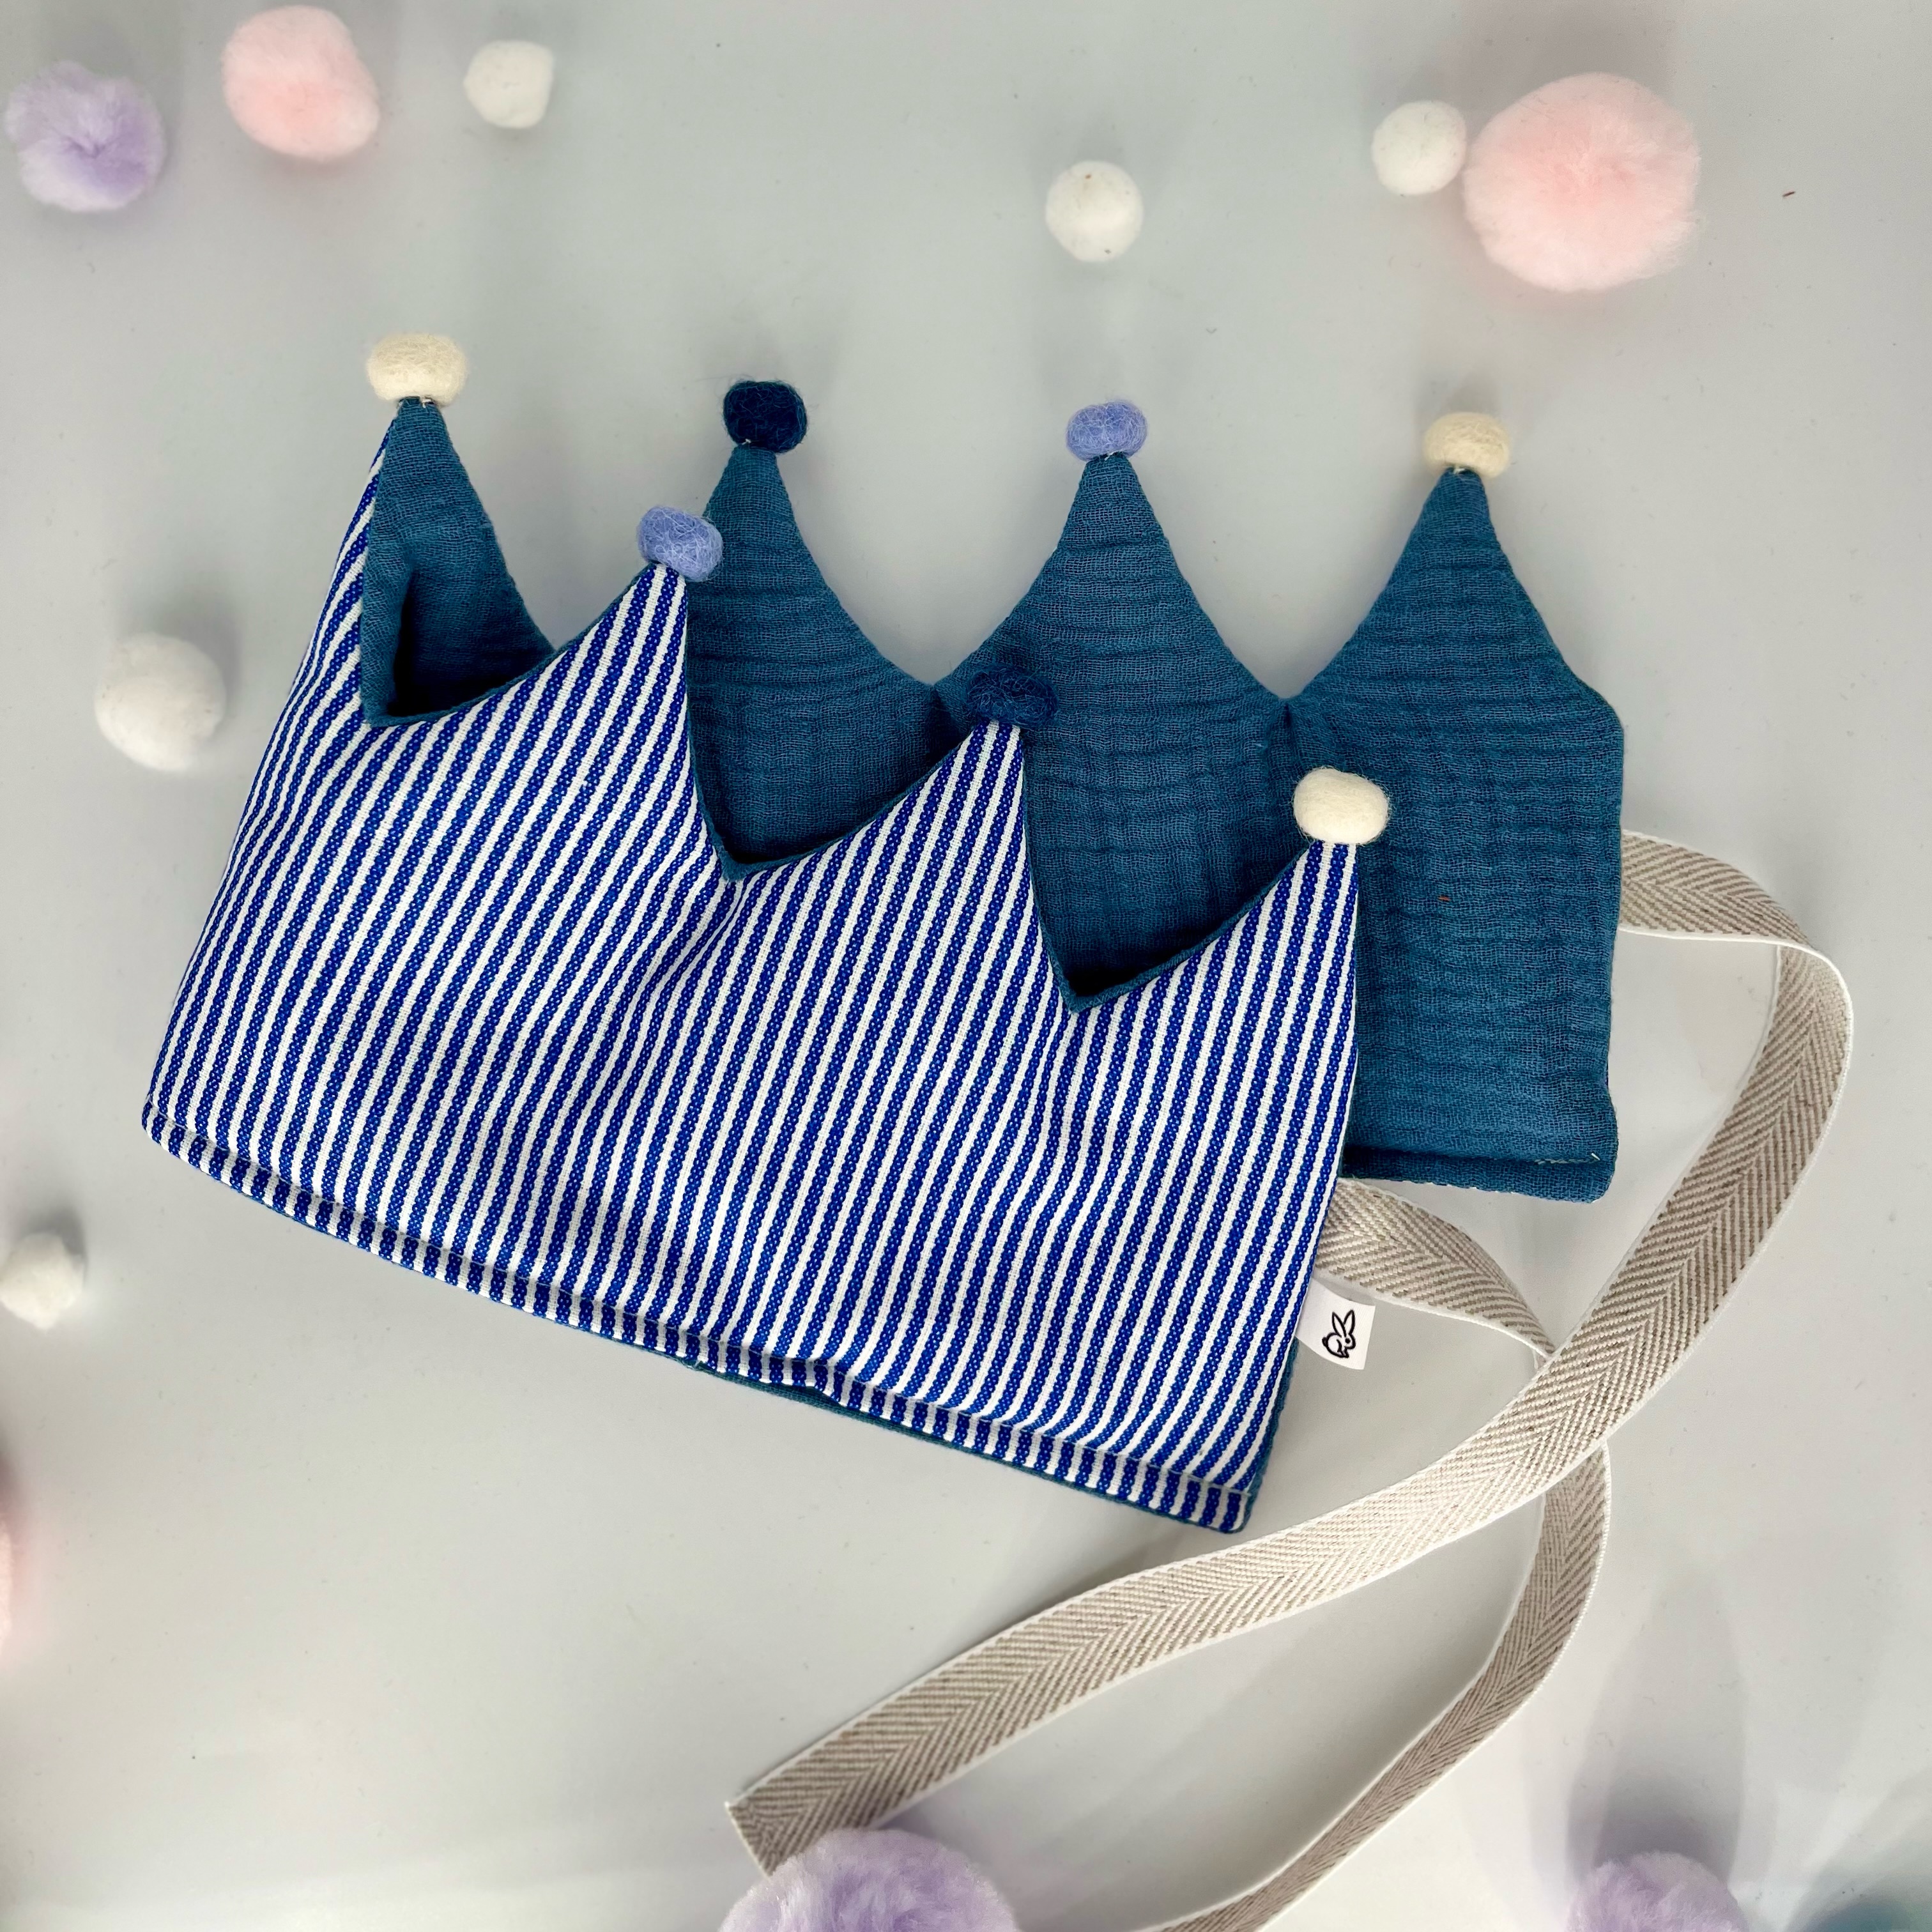 Stoffkrone | Geburtstagskrone Blau STREIFEN mit Pompons